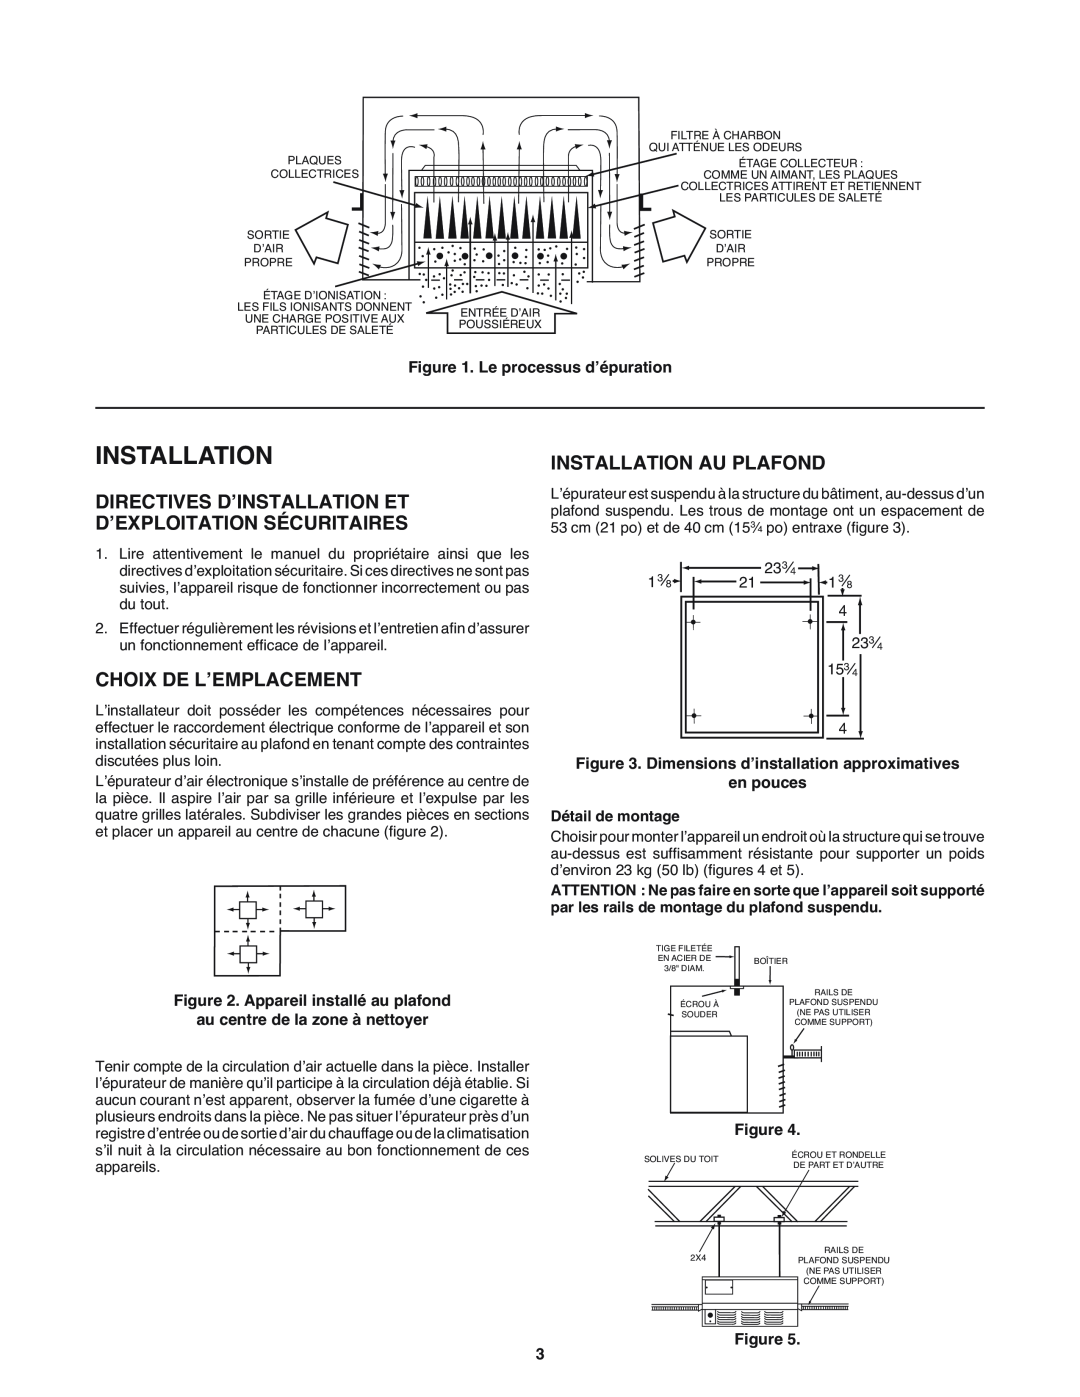 White Rodgers SSC1000 manual Directives D’Installation Et, D’Exploitation Sécuritaires, Choix De L’Emplacement 